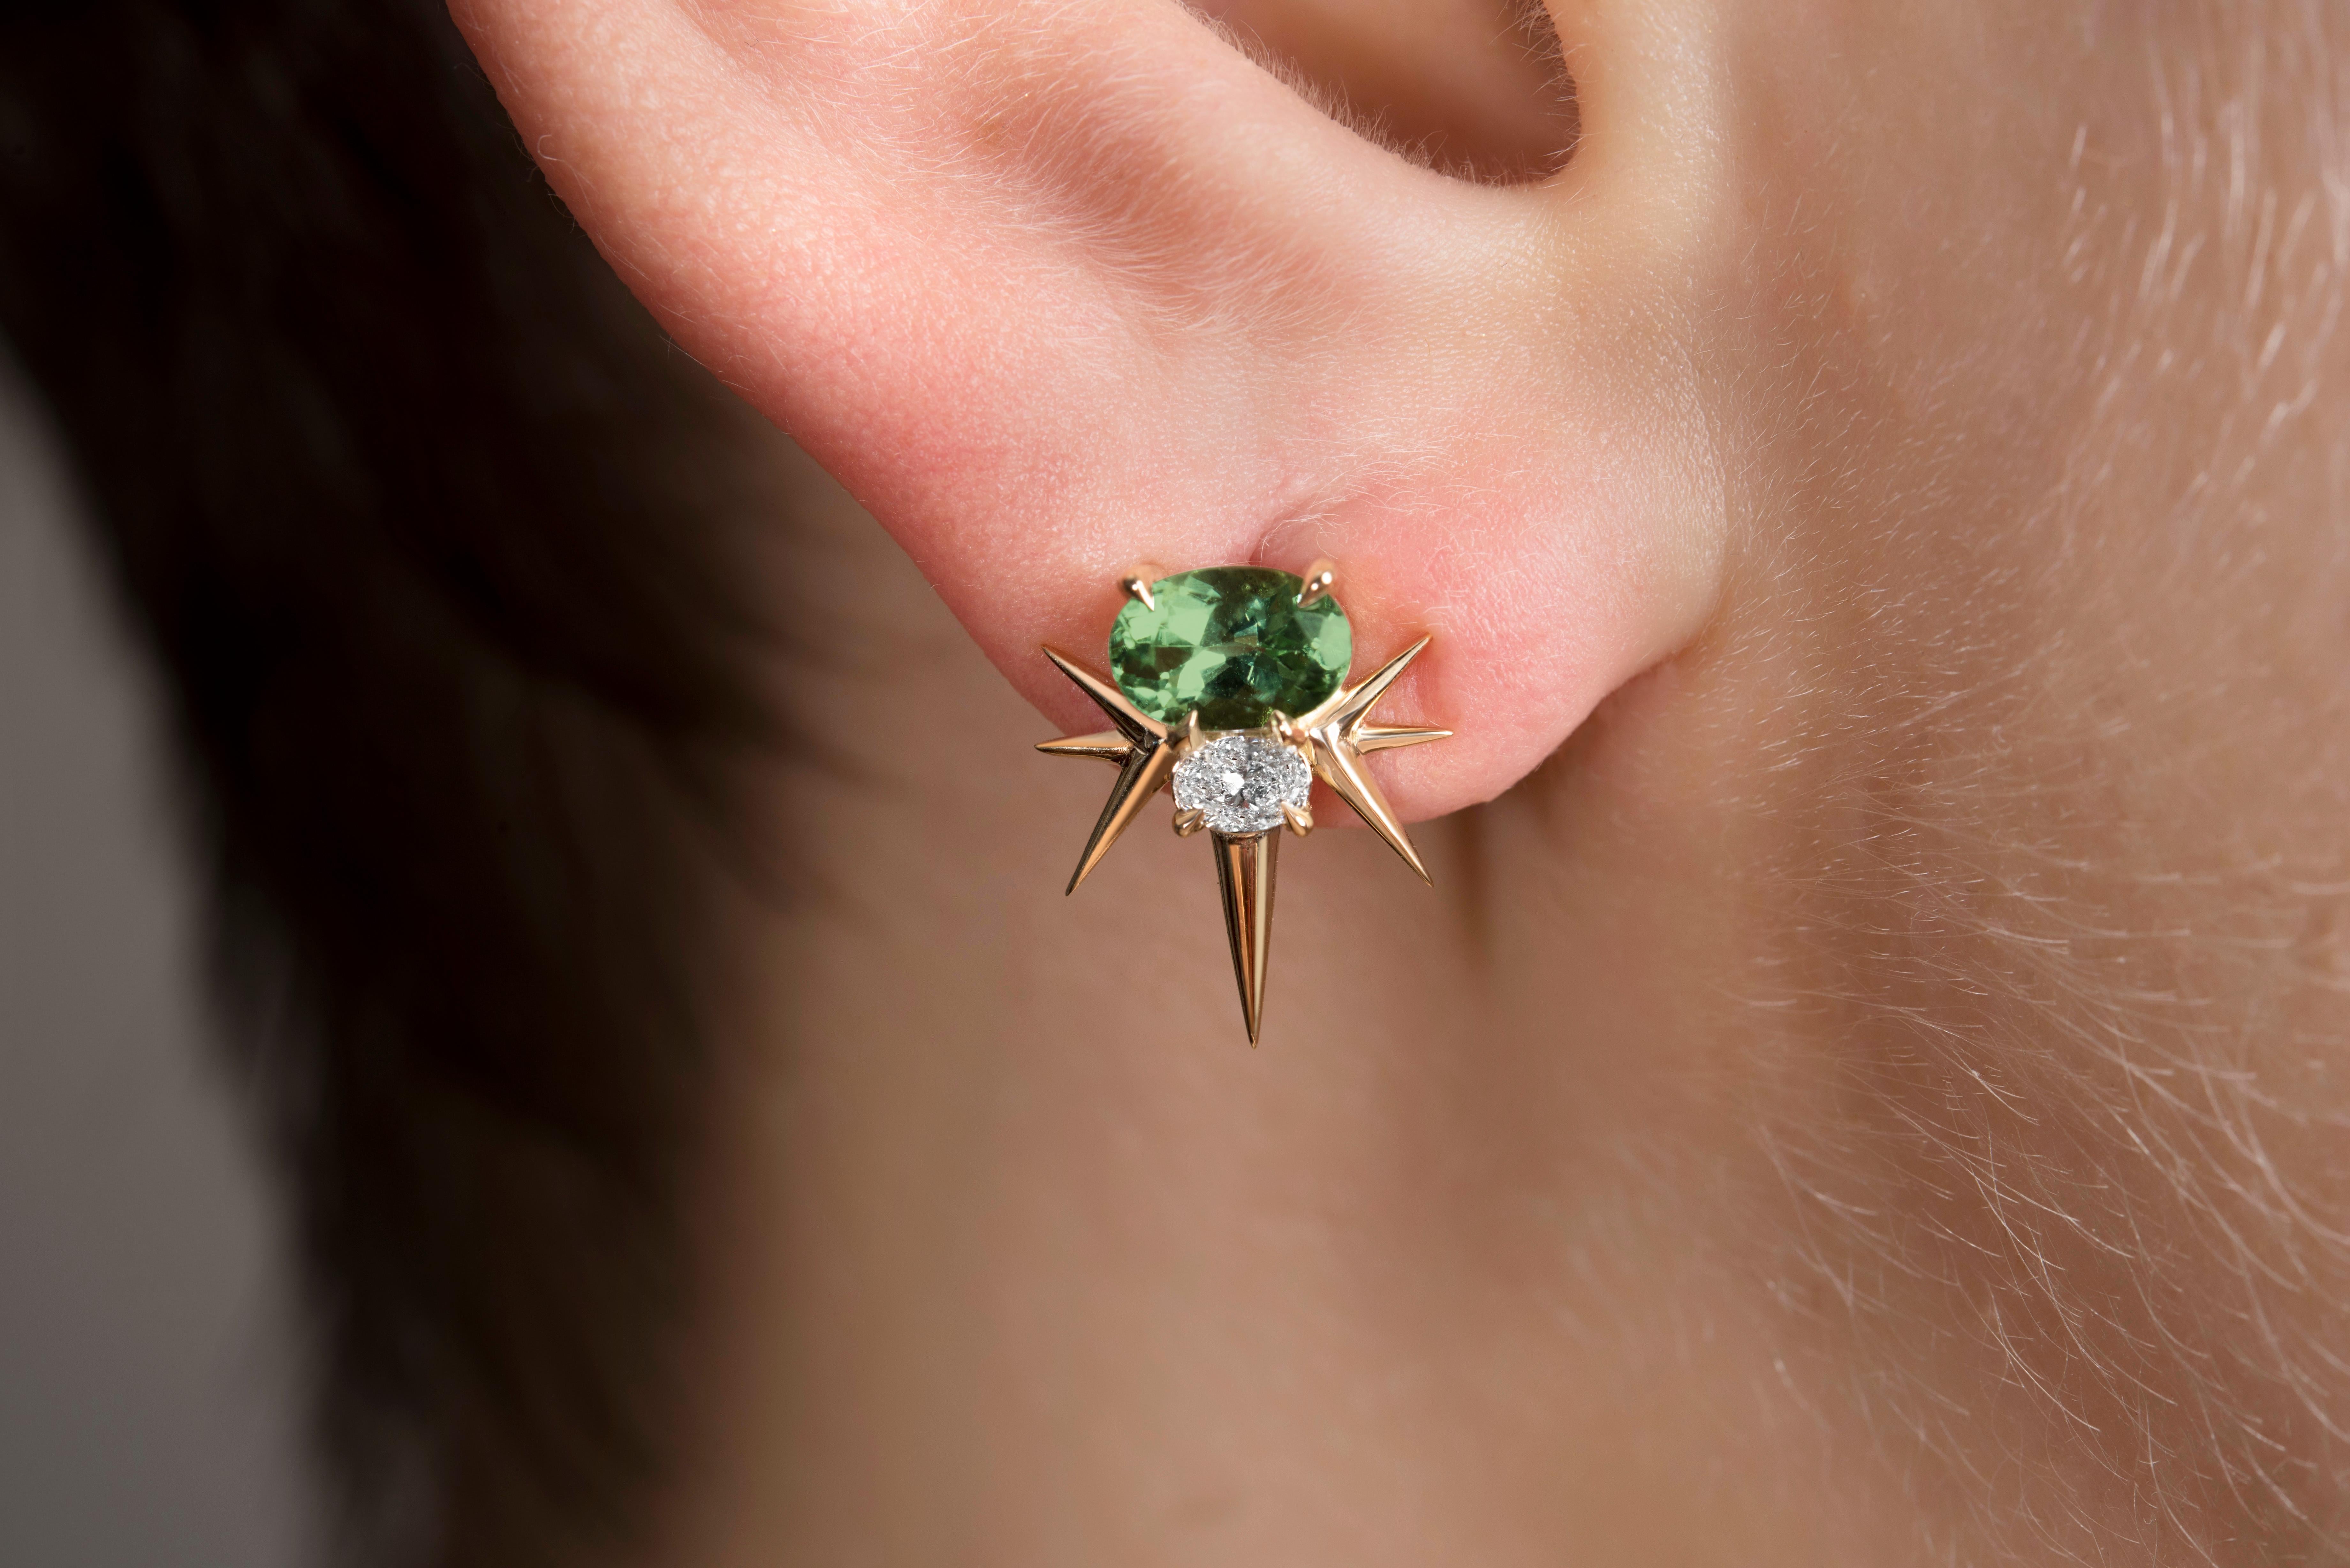 spiky earrings 2000s